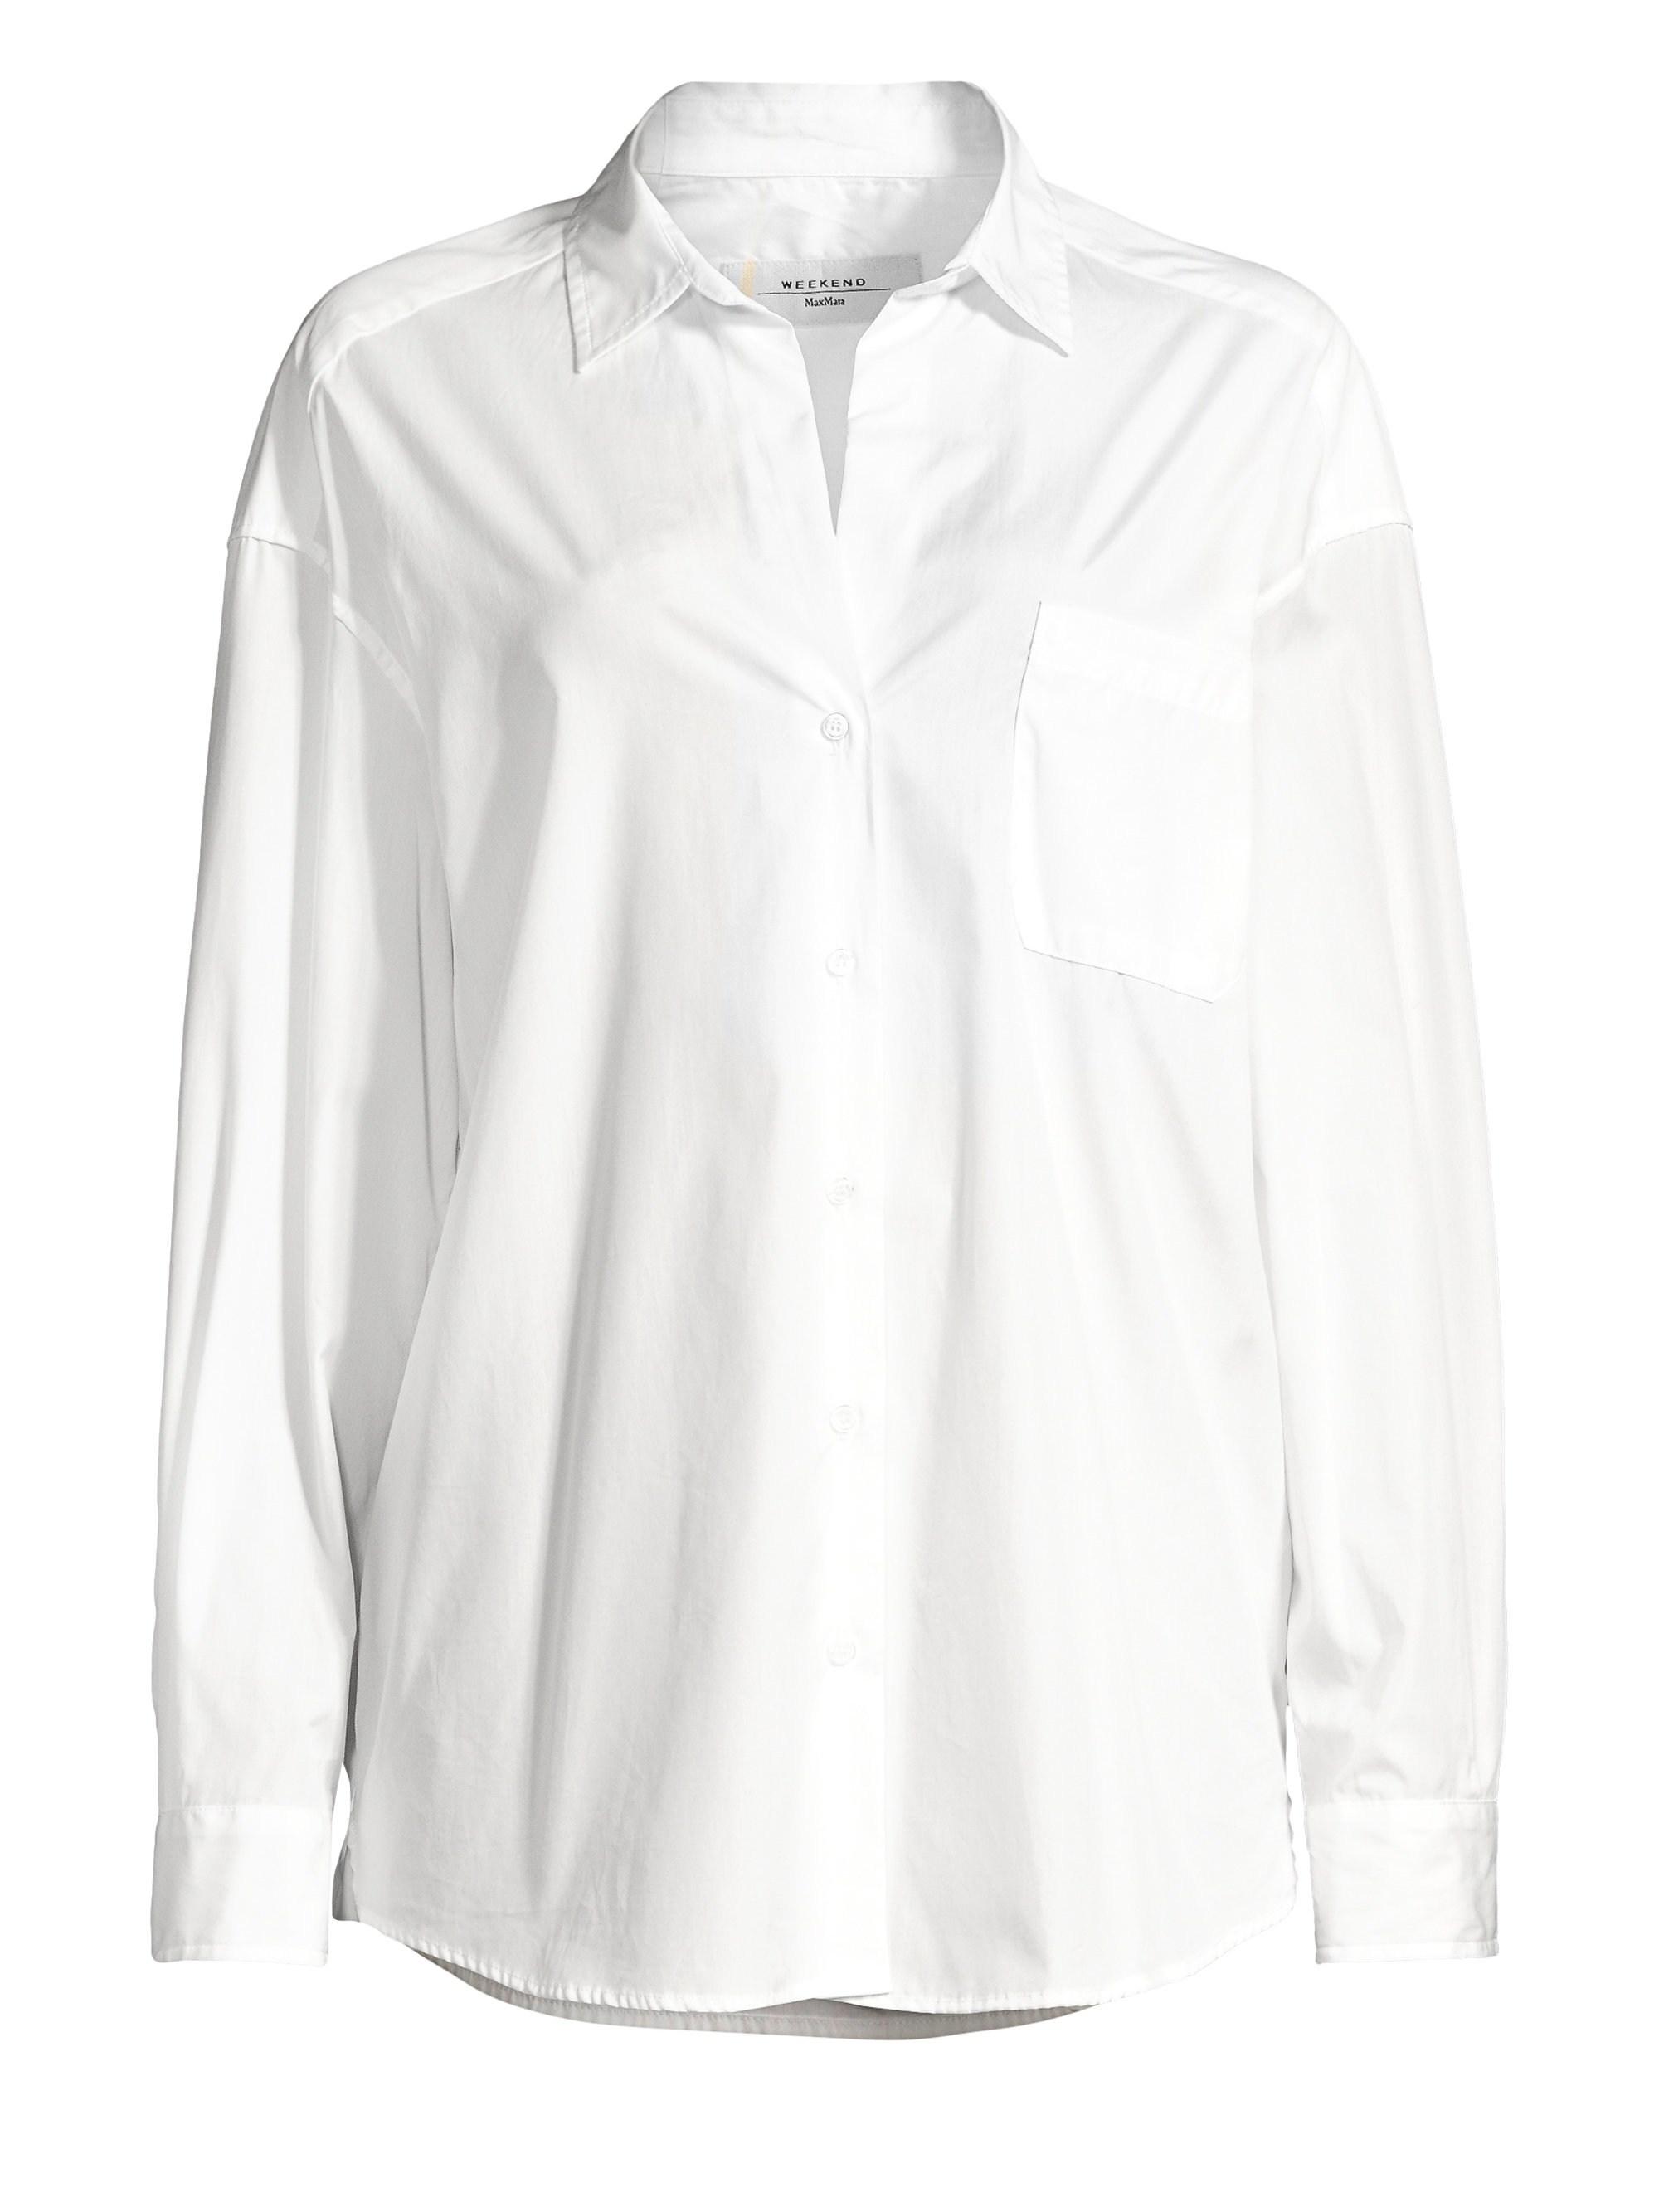 Weekend by Maxmara Women's Locusta Cotton Poplin Shirt - White - Lyst